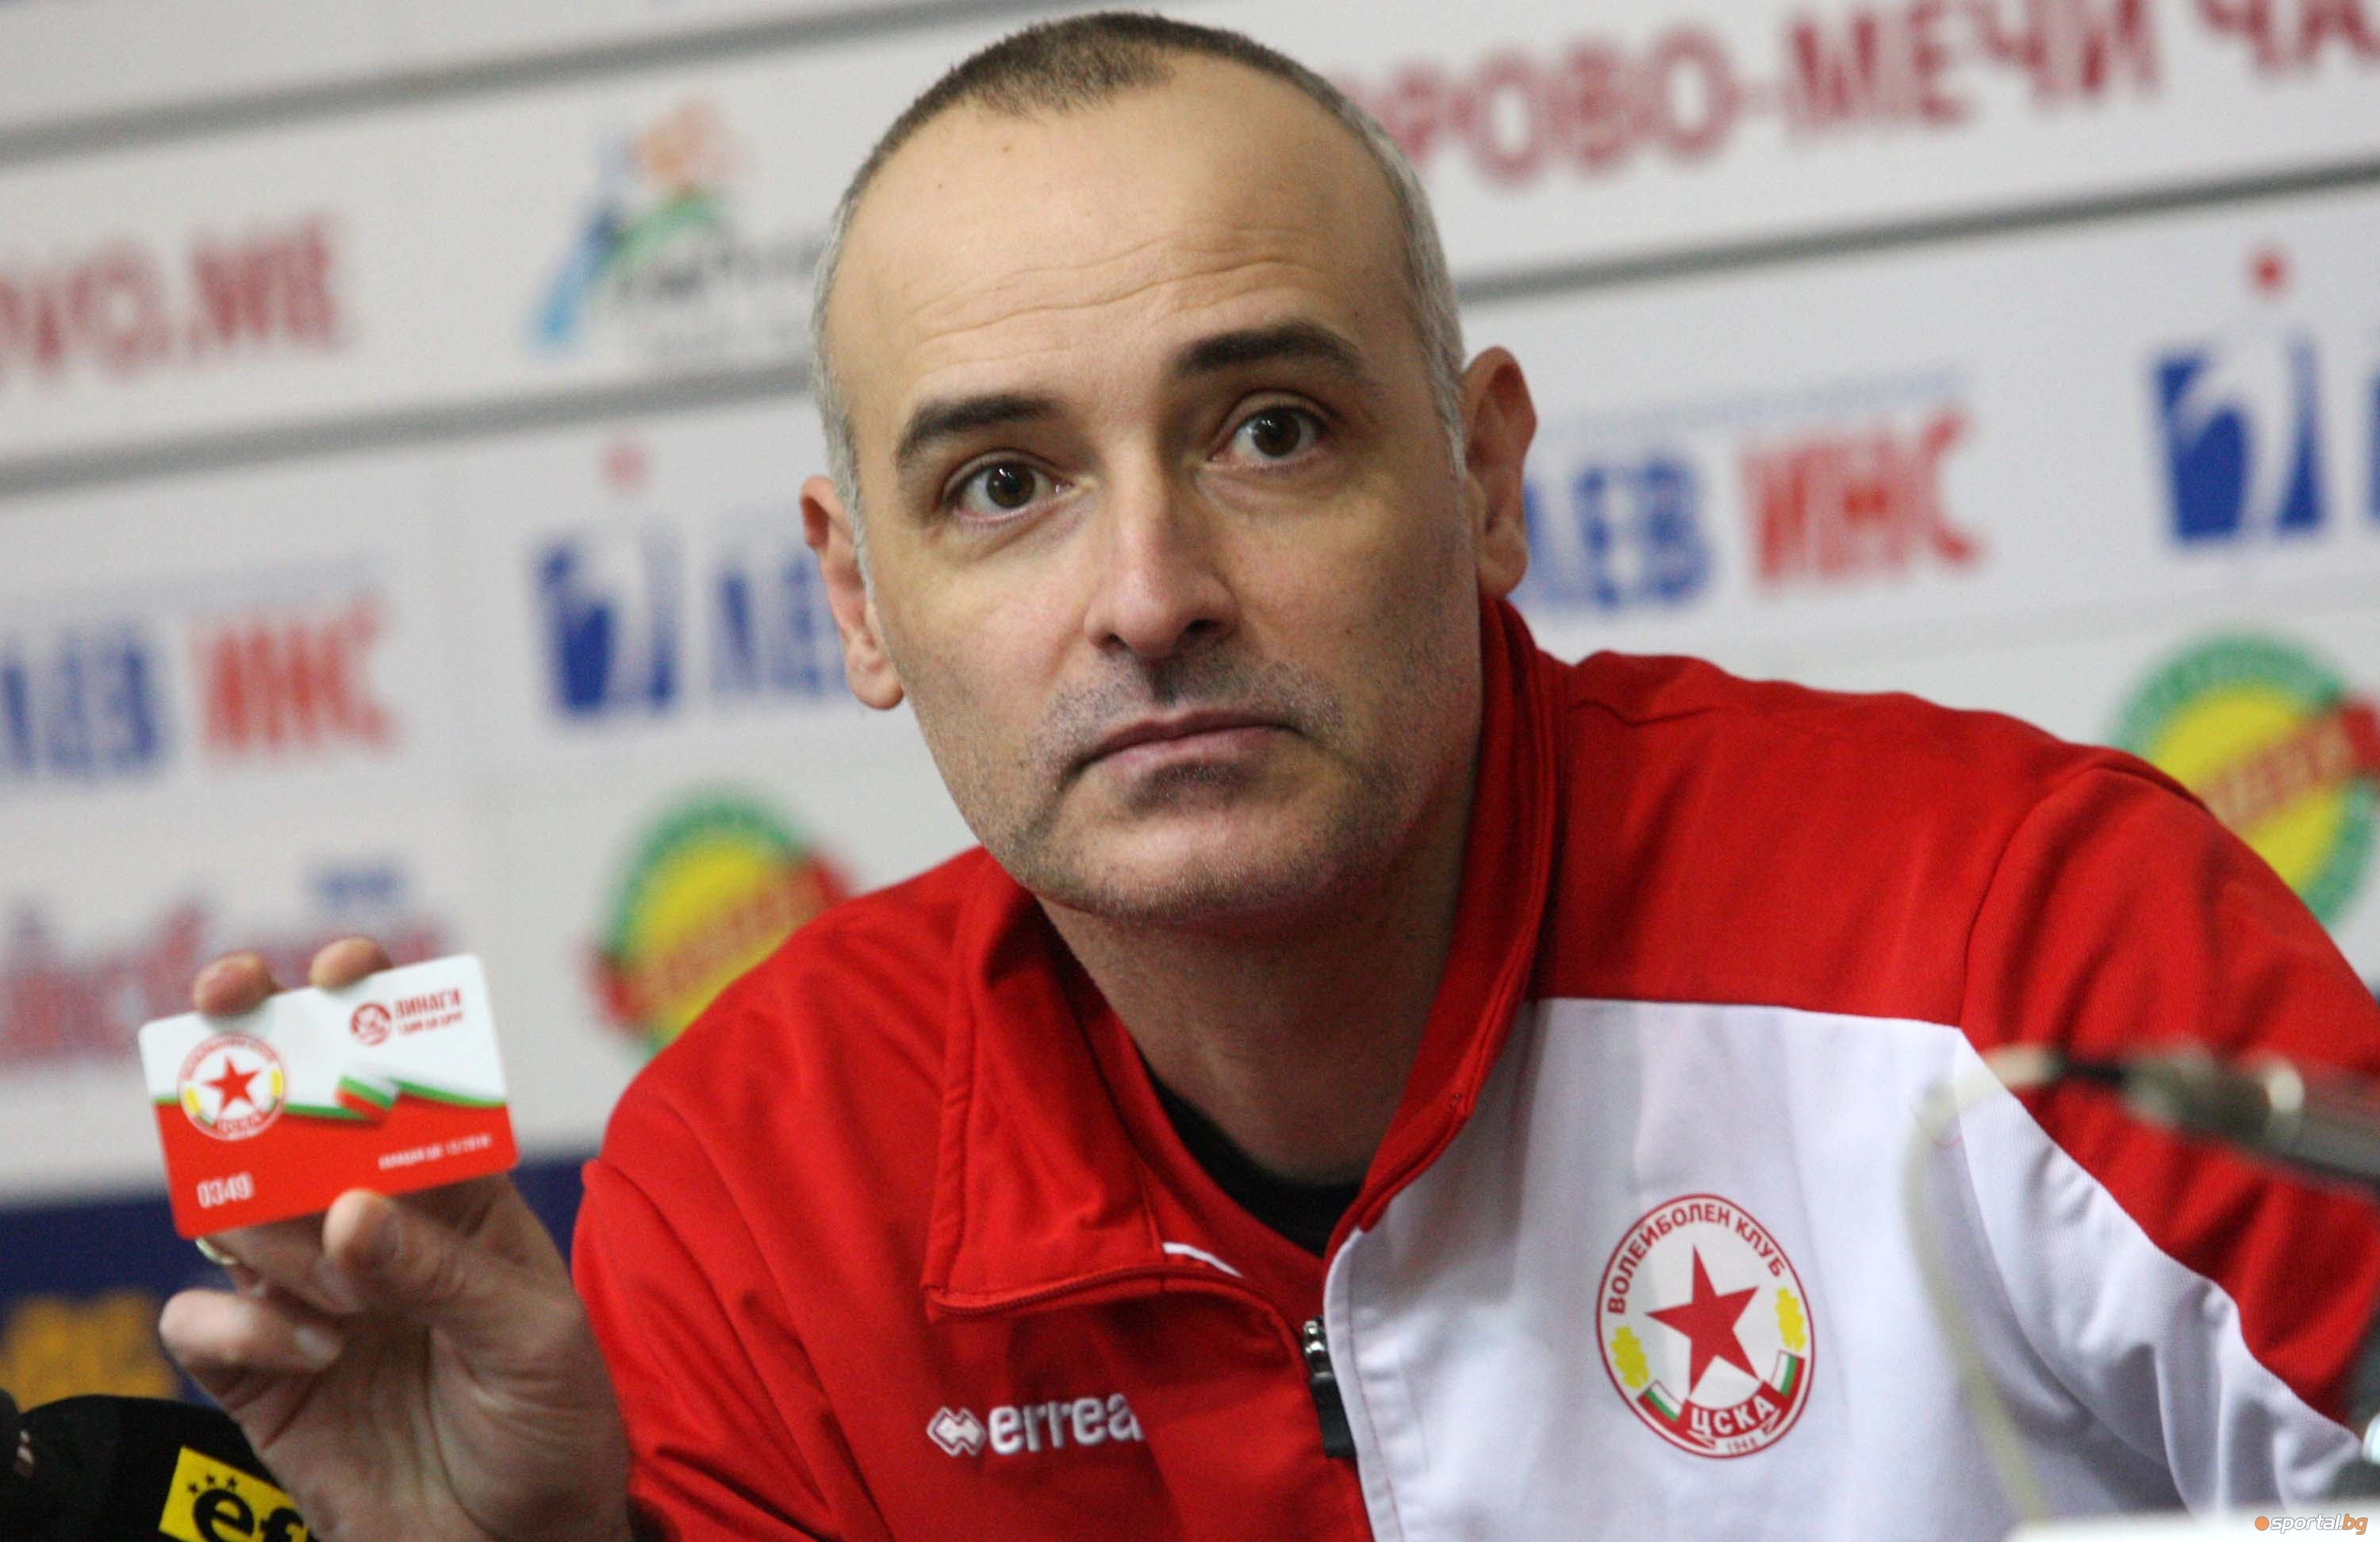 Ветеранът Ивайло Стефанов не мисли за отказване от волейбола. Той